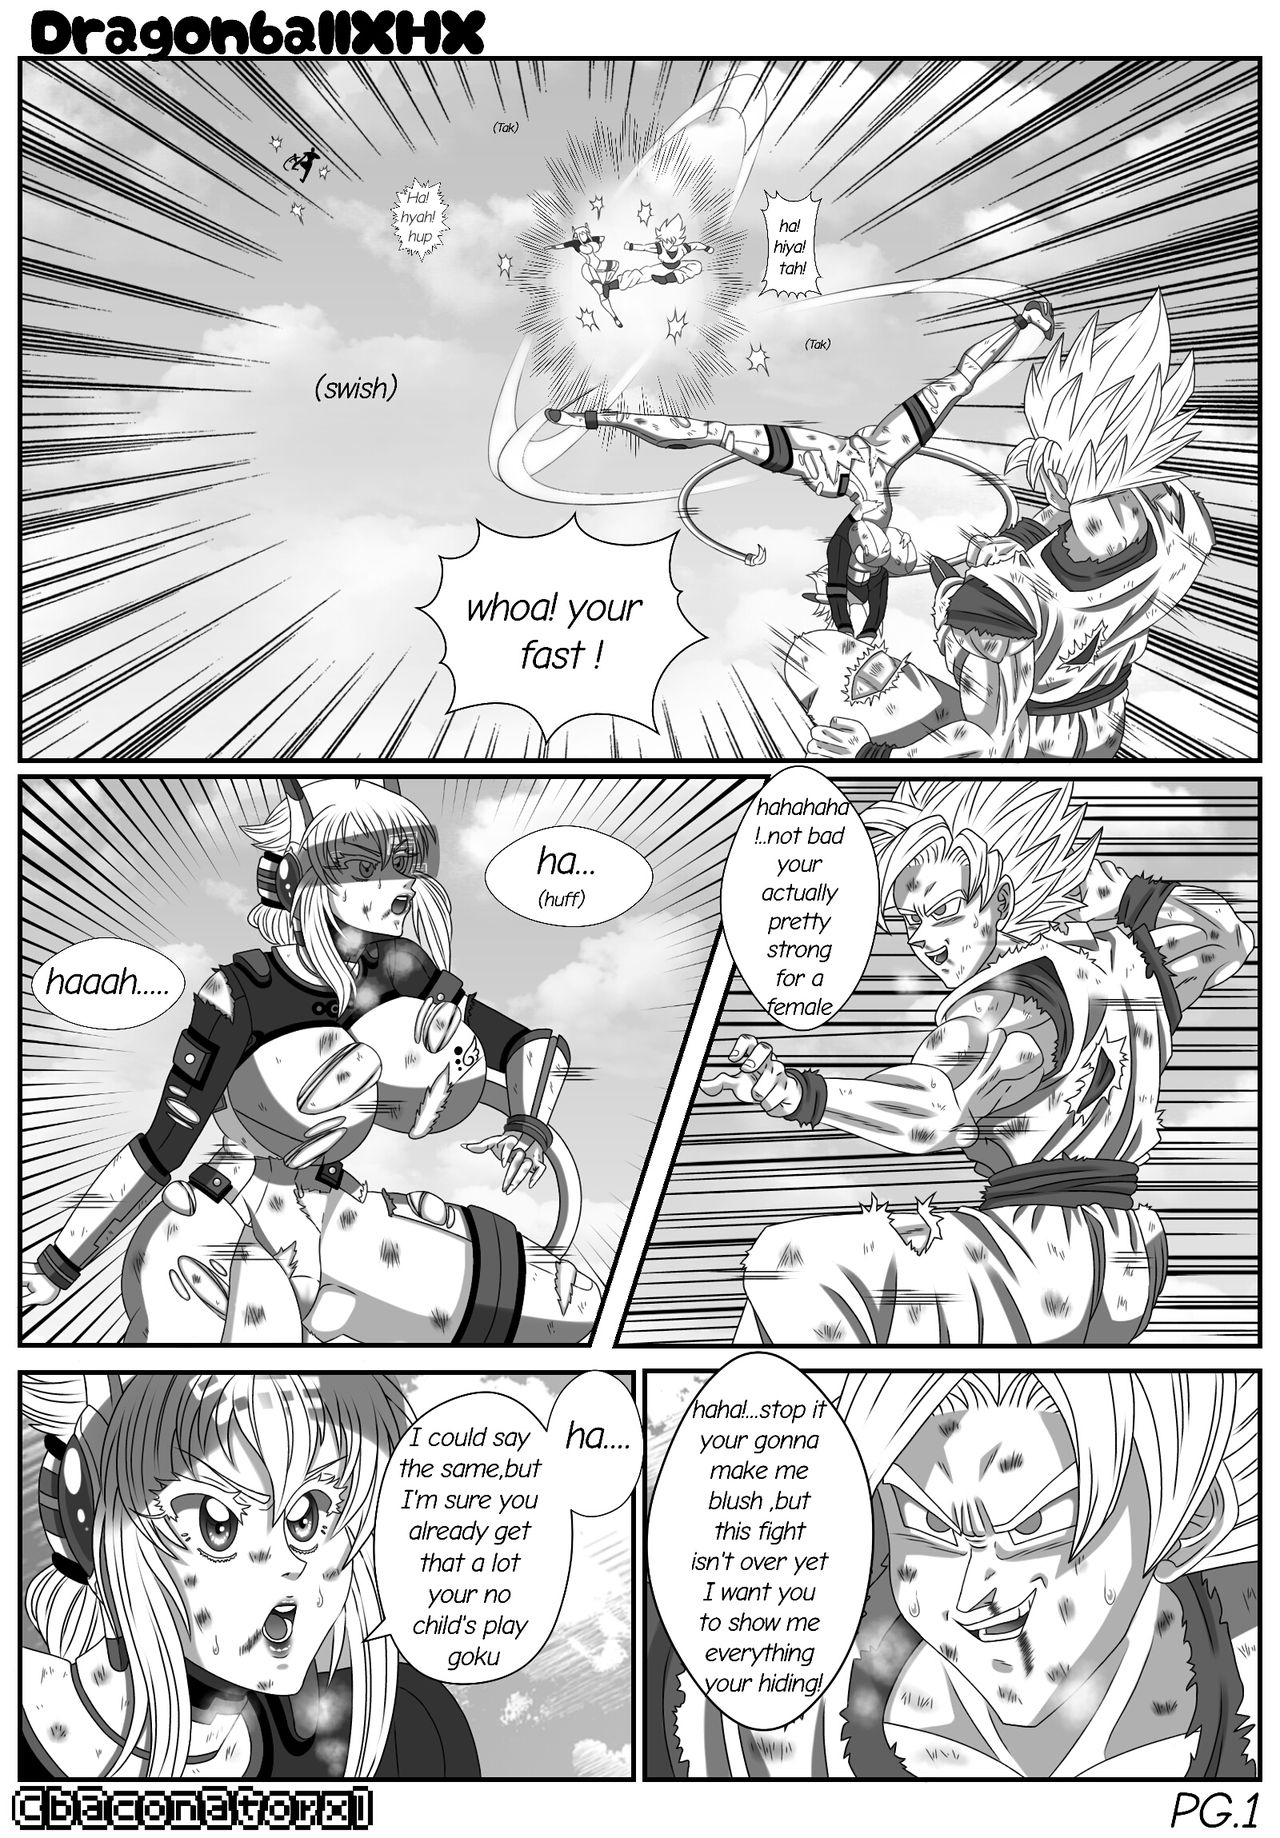 Dragon Ball Z XHX(fan fiction parody) [ongoing](English) 2